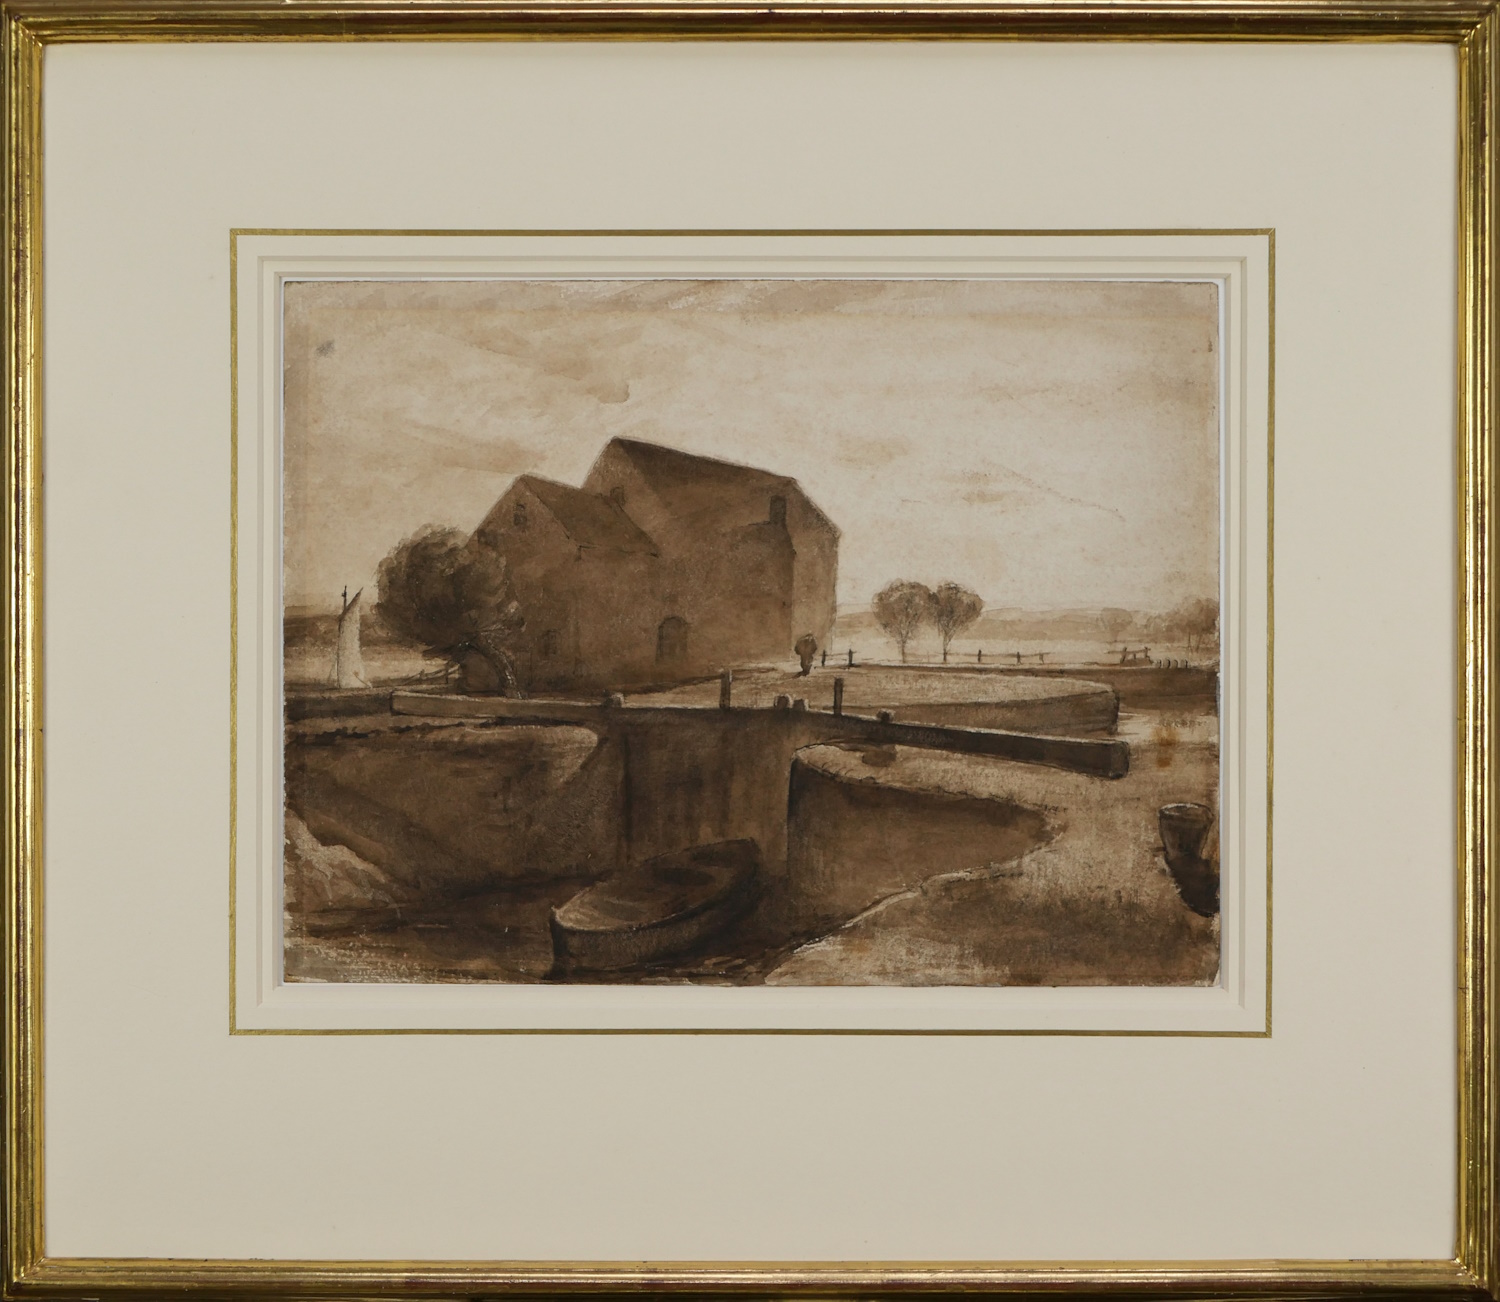 Peter De Wint – The Watermill